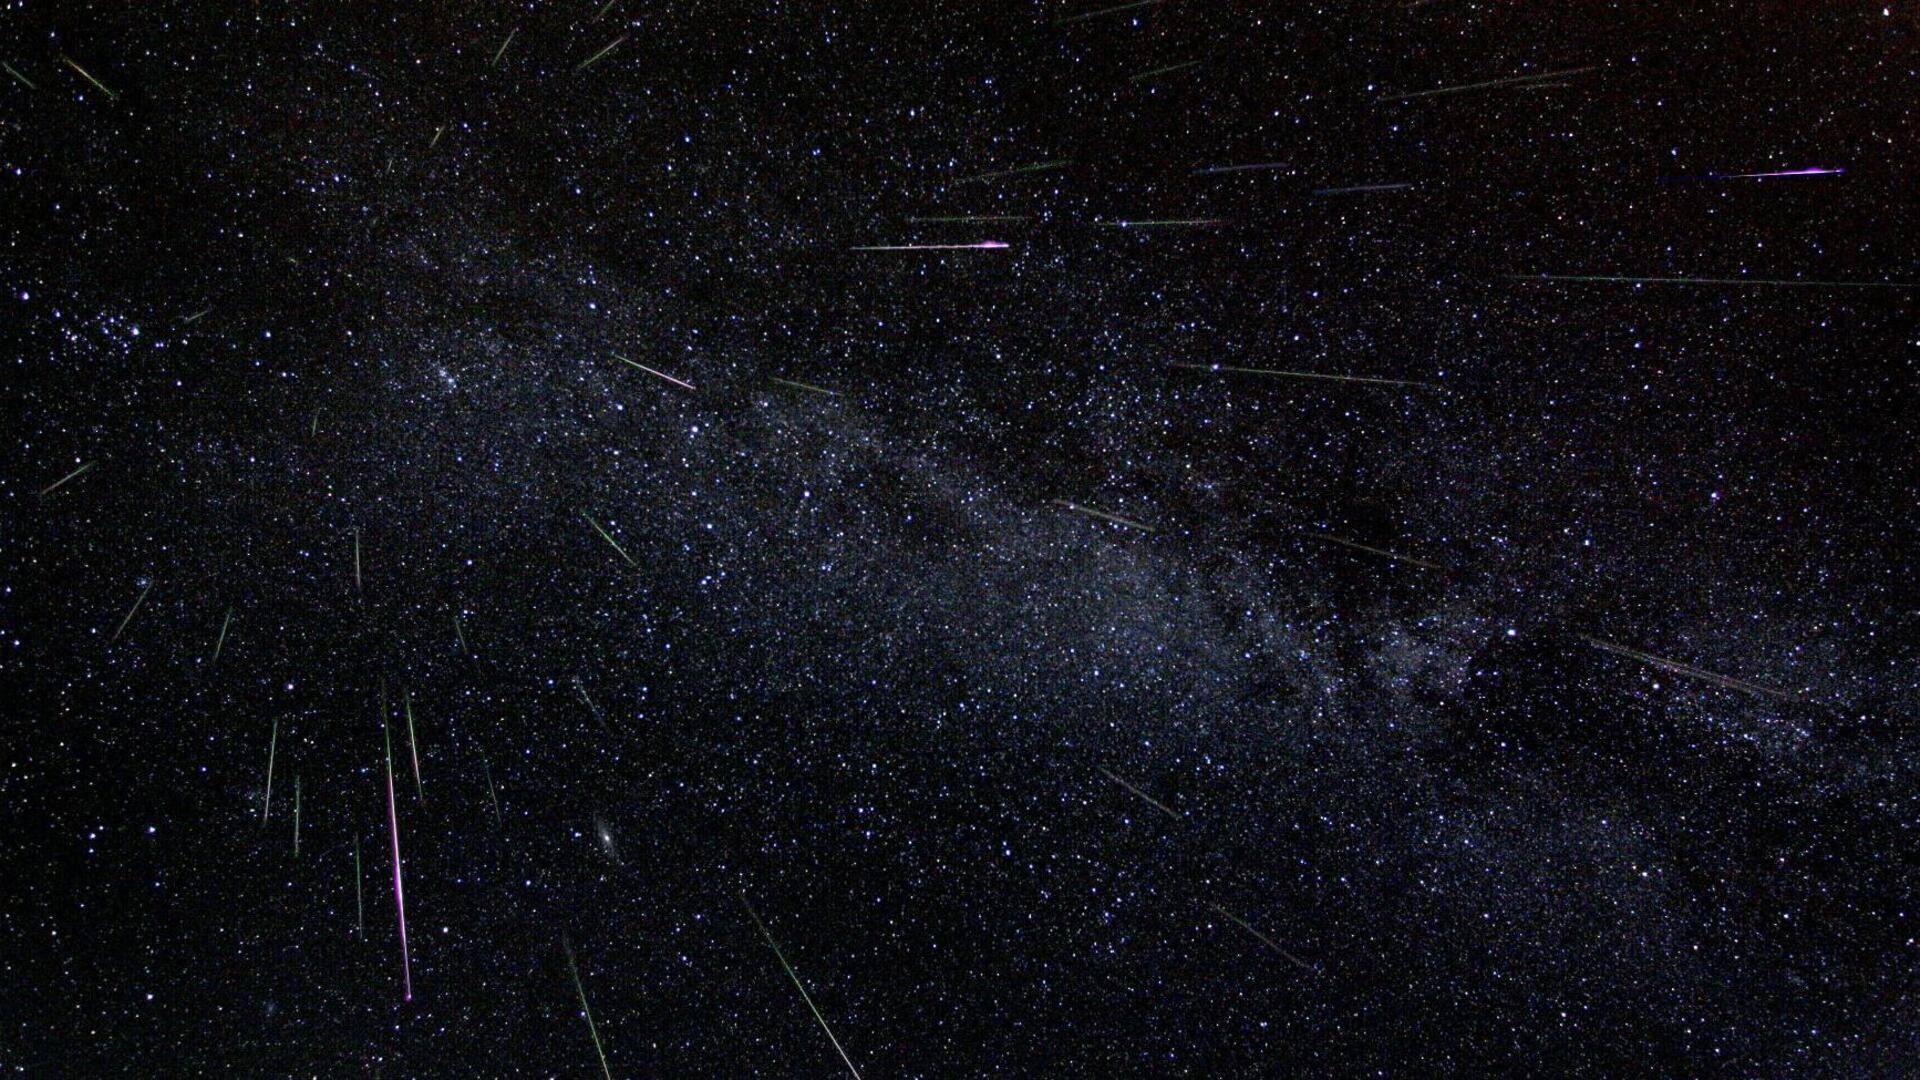 Perseid meteor shower to peak on August 12